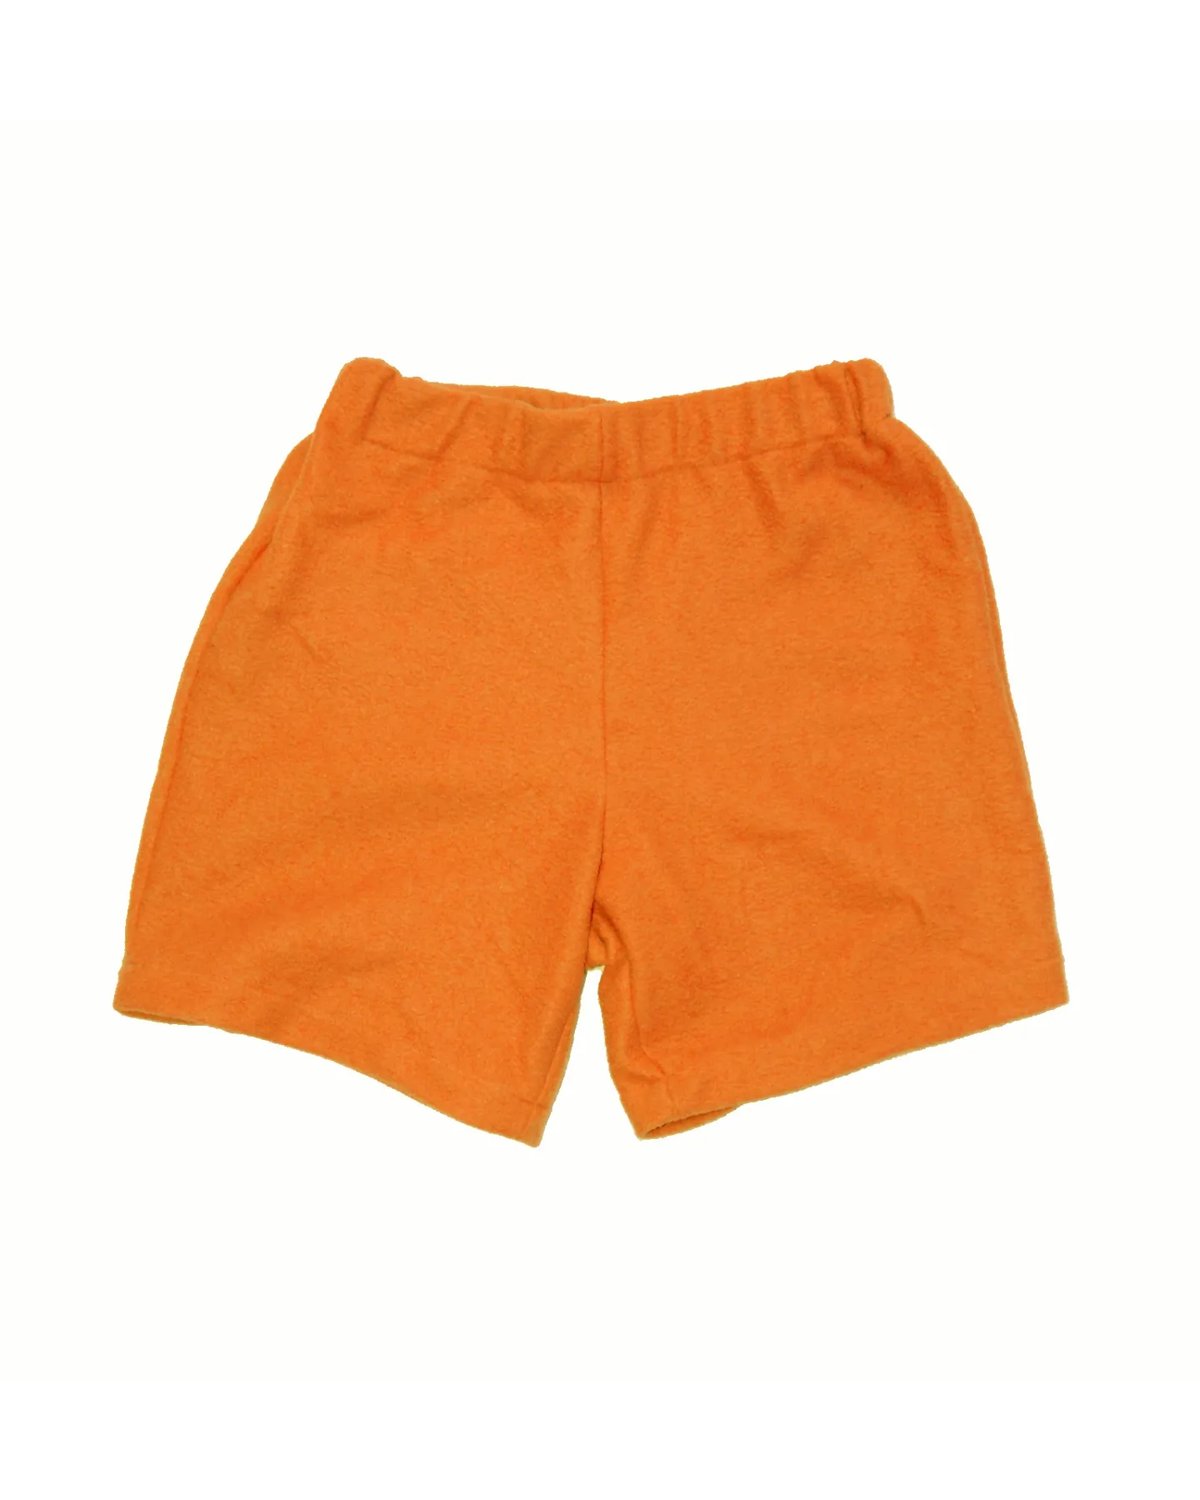 Image of Orange short shorts 